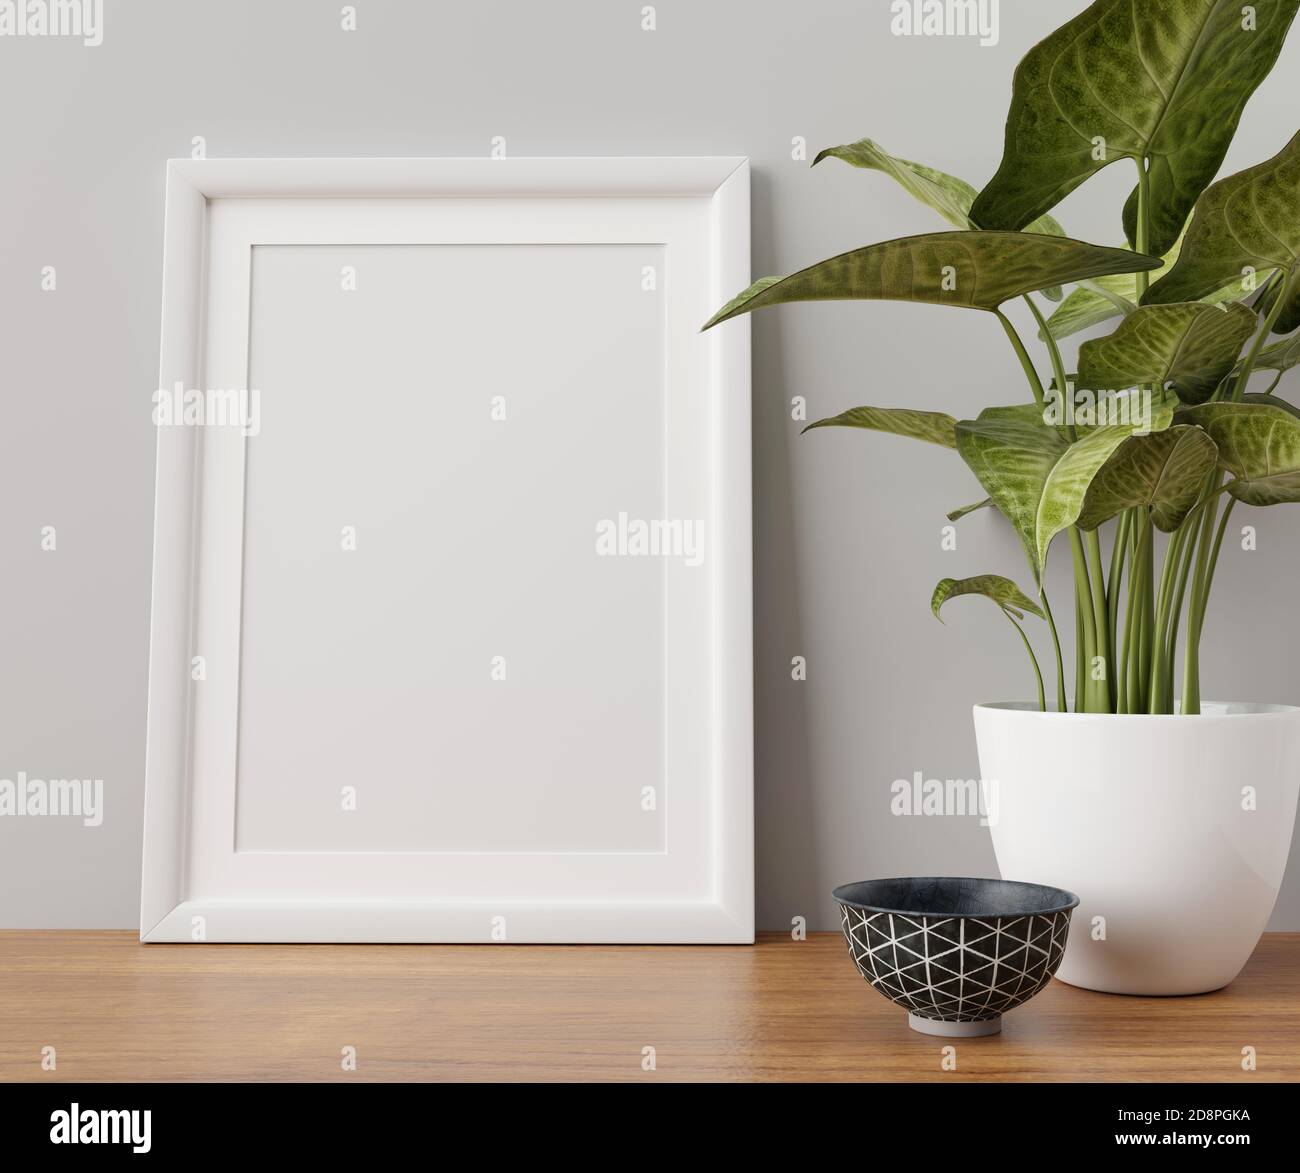 Frame mockup in interior 3d illustration Stock Photo